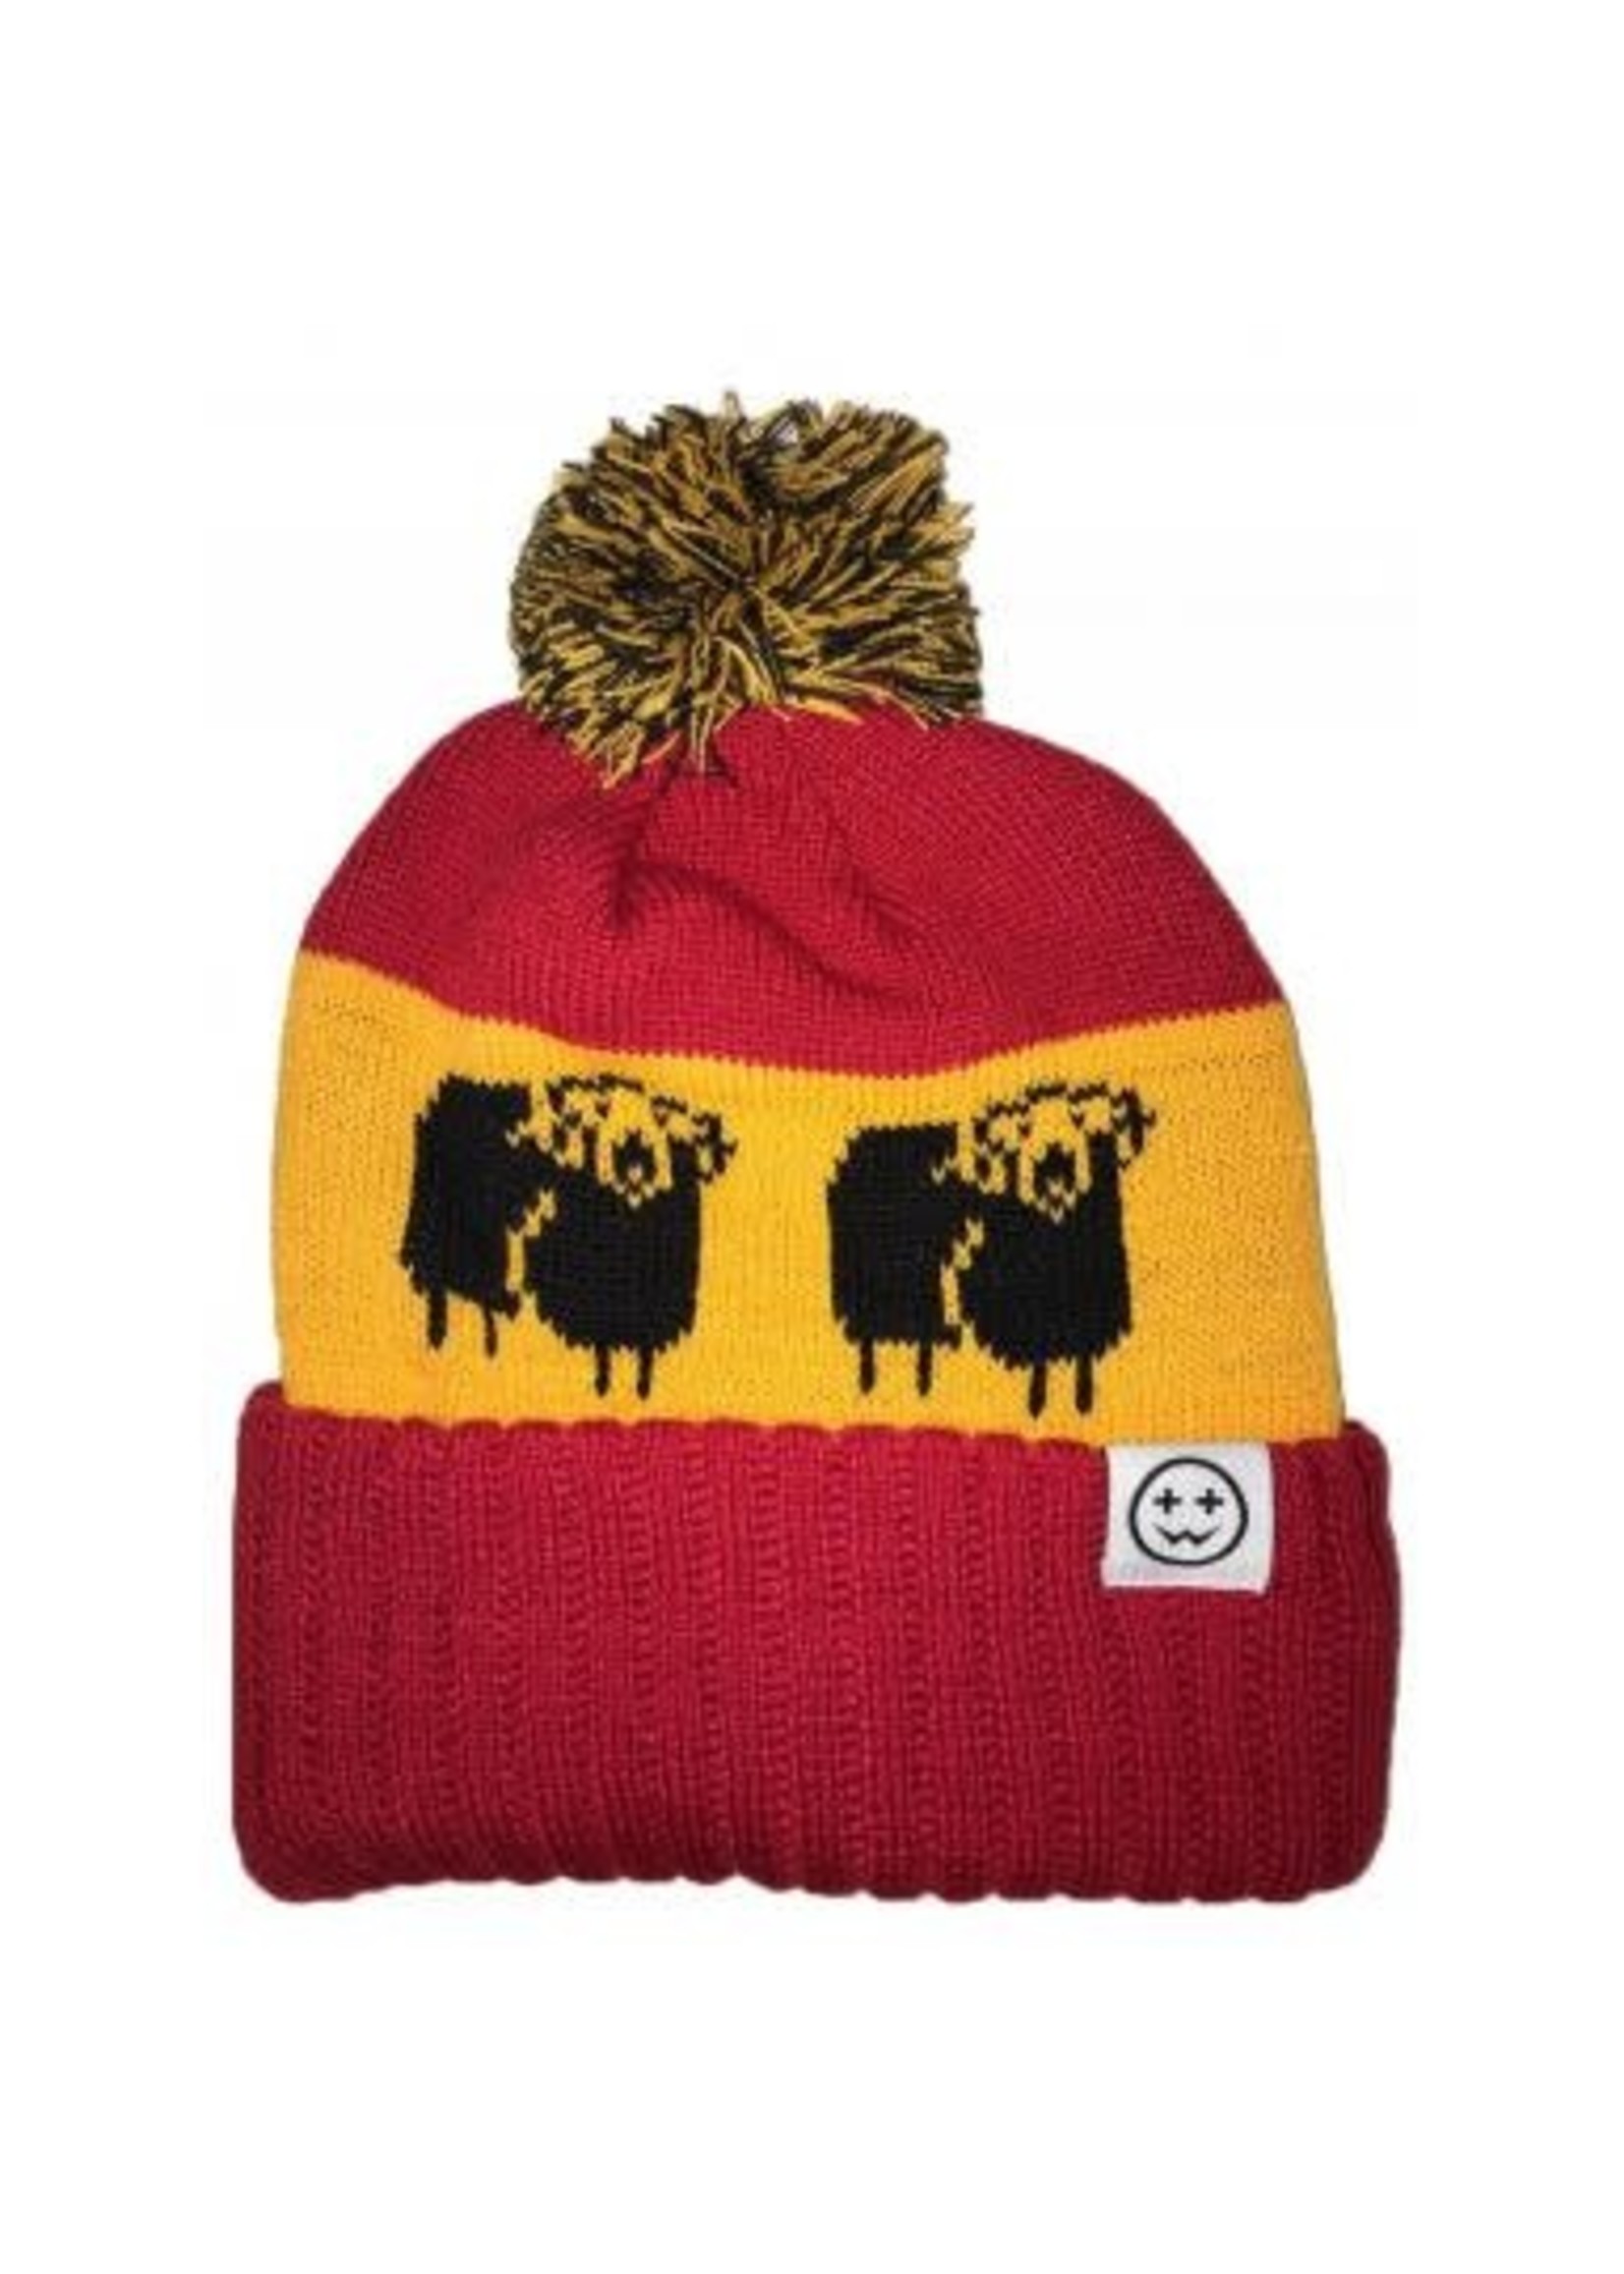 WackySox Wacky Bobble Hat - Sheep Red/Gold/Black